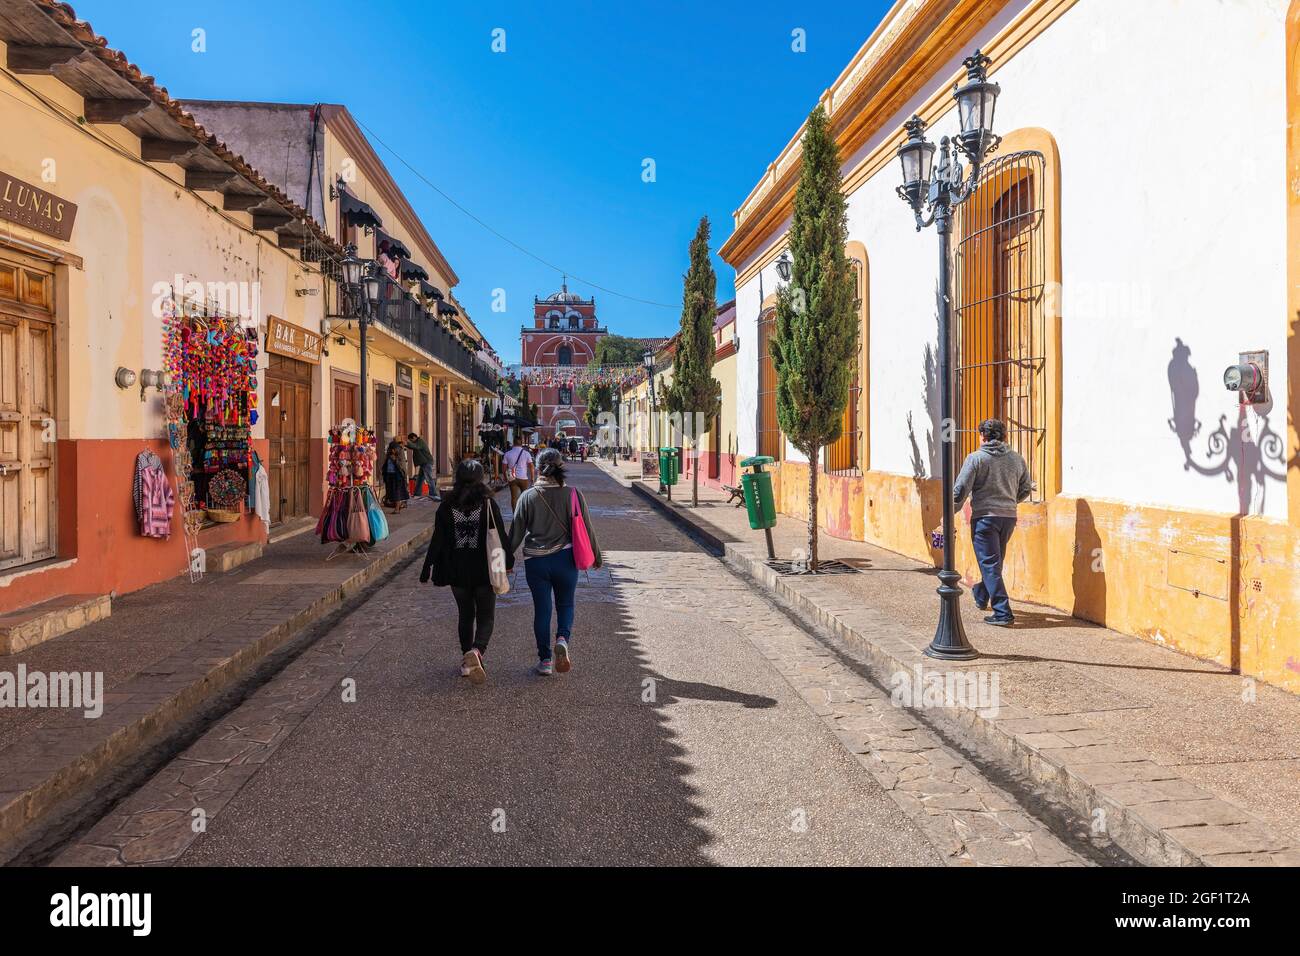 Personnes marchant dans une rue colorée de style colonial mexicain du centre-ville de San Cristobal de las Casas, Chiapas, Mexique. Banque D'Images